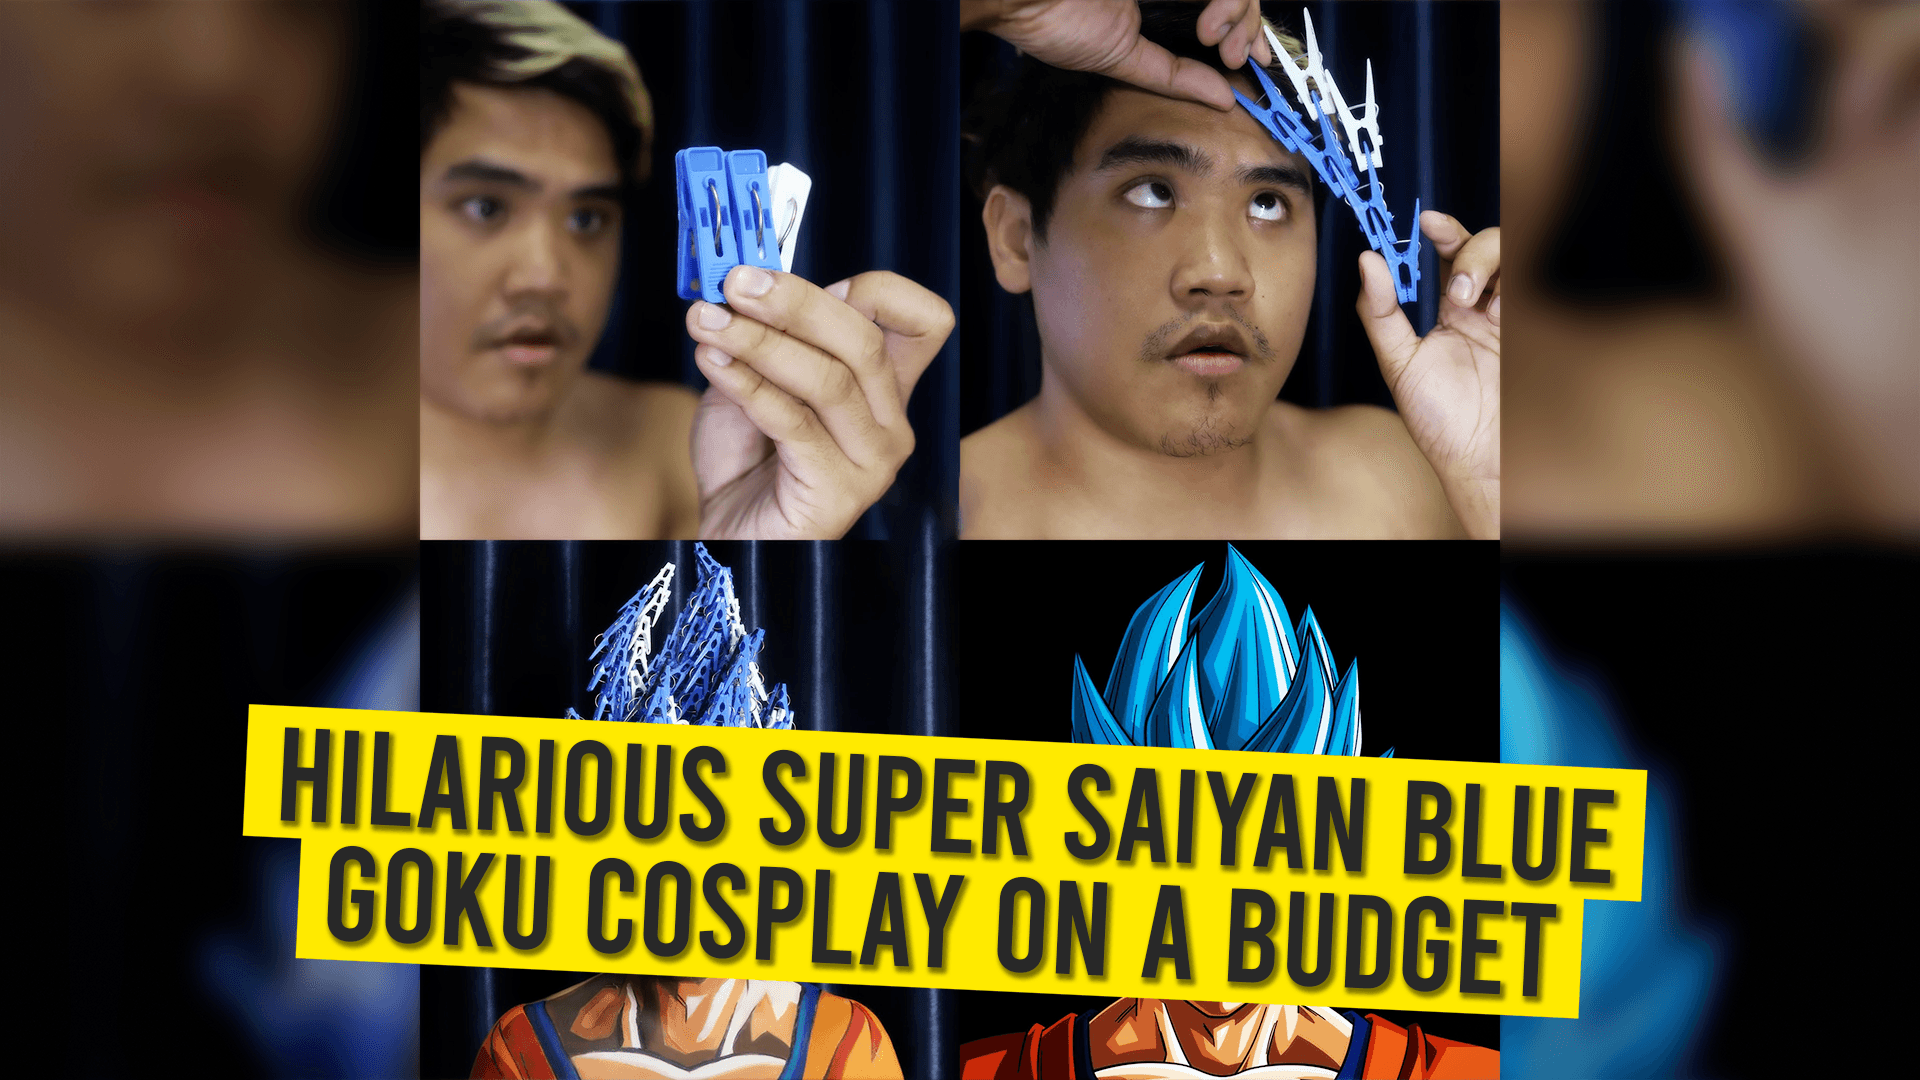 08 Hilarious Super Saiyan Blue Goku Cosplay On A Budget